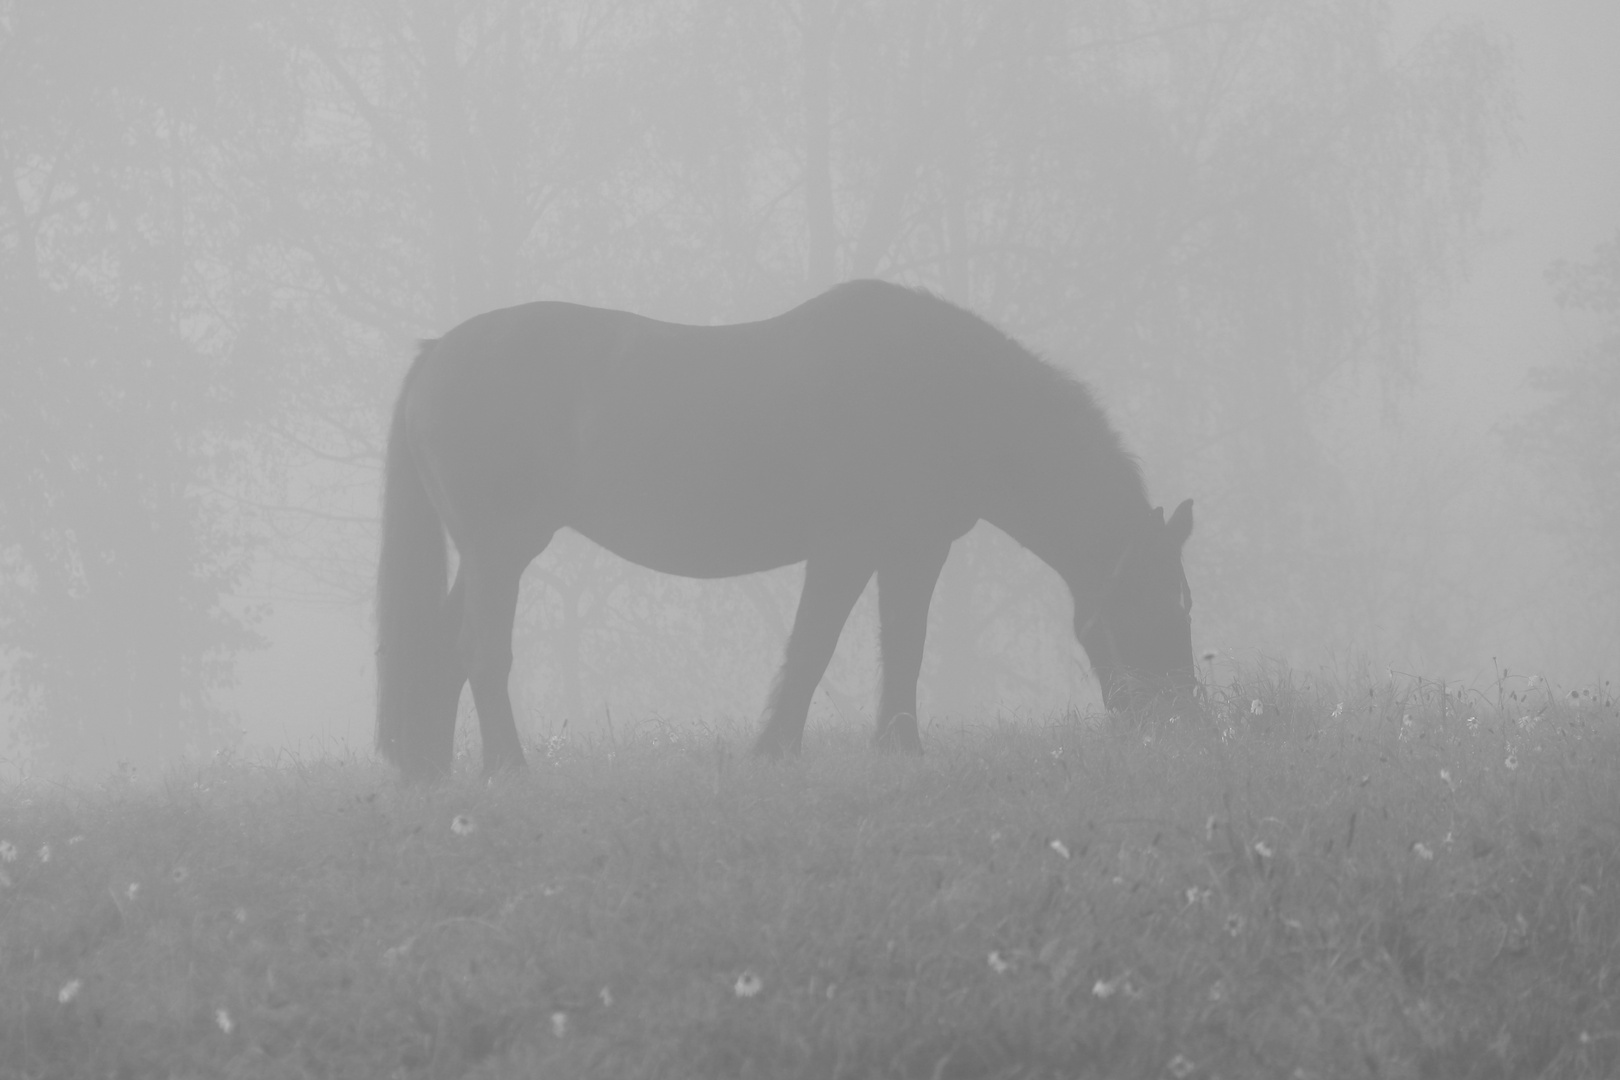 Pferd im Morgennebel